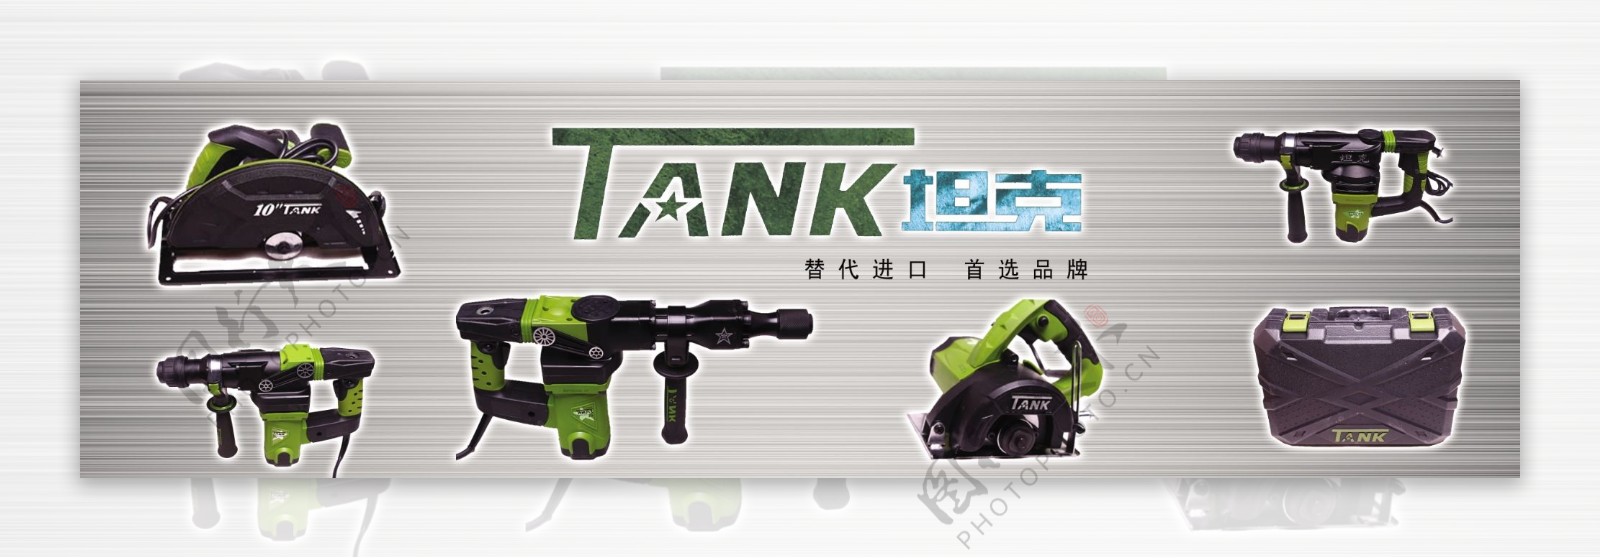 坦克电动工具